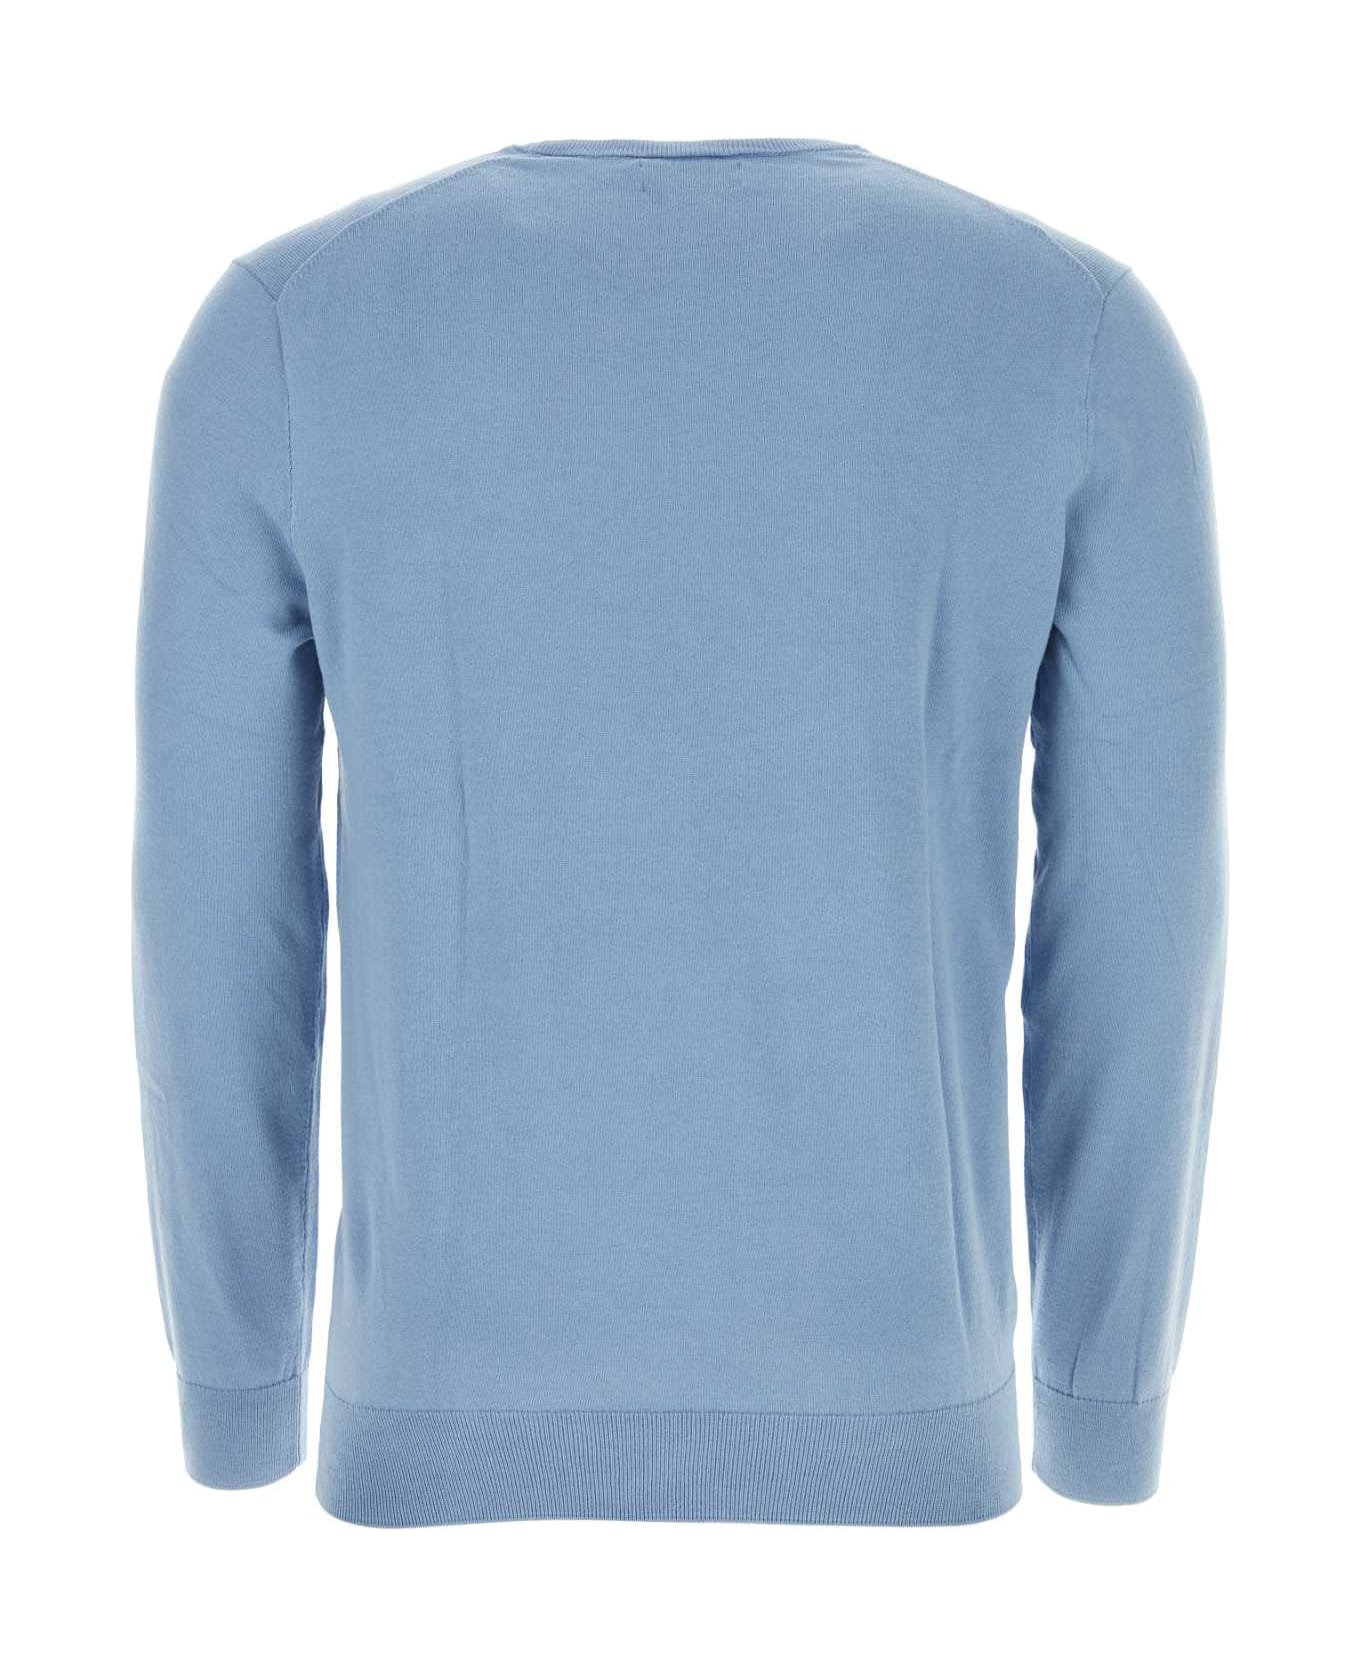 Polo Ralph Lauren Light-blue Cotton Sweater - Blue